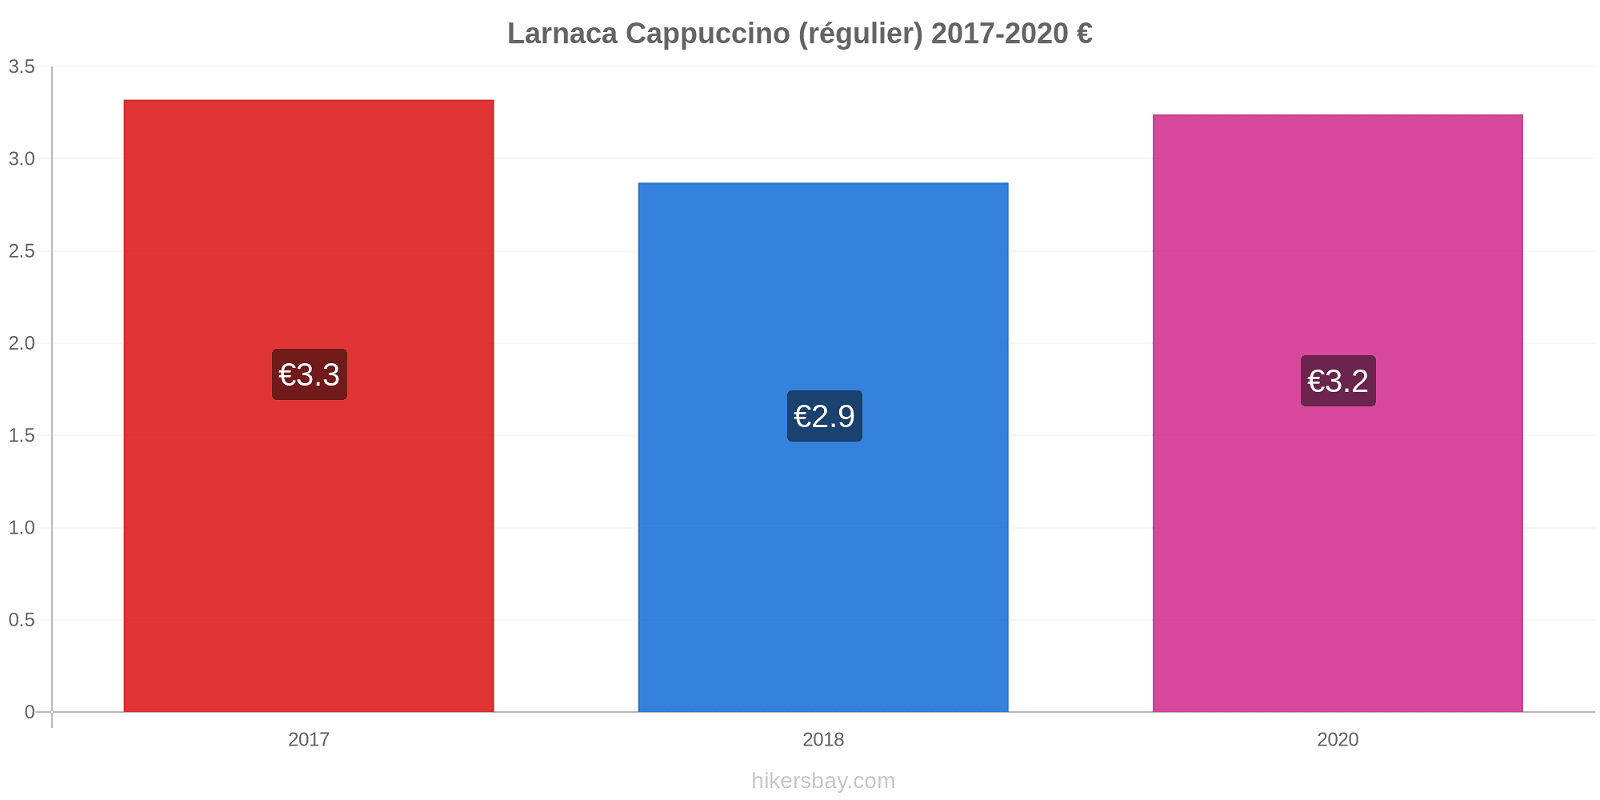 Larnaca changements de prix Cappuccino (régulier) hikersbay.com